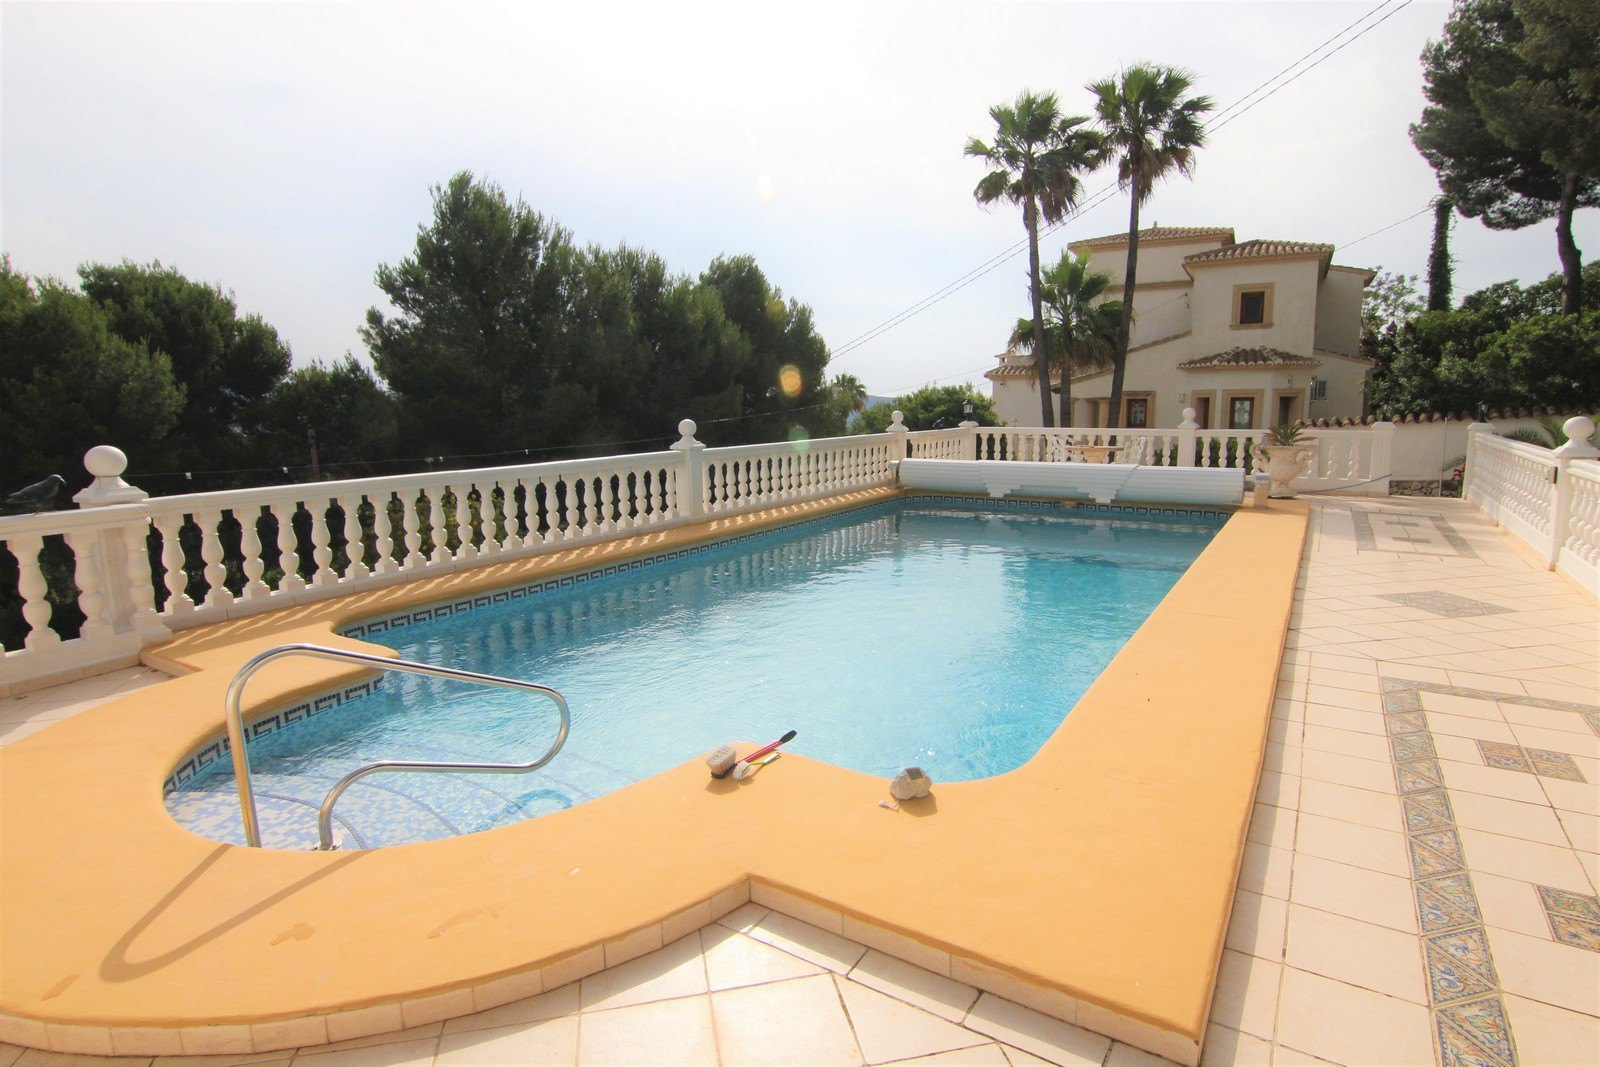 Villa zum Verkauf mit zwei Wohnungen und Pool in Moraira.